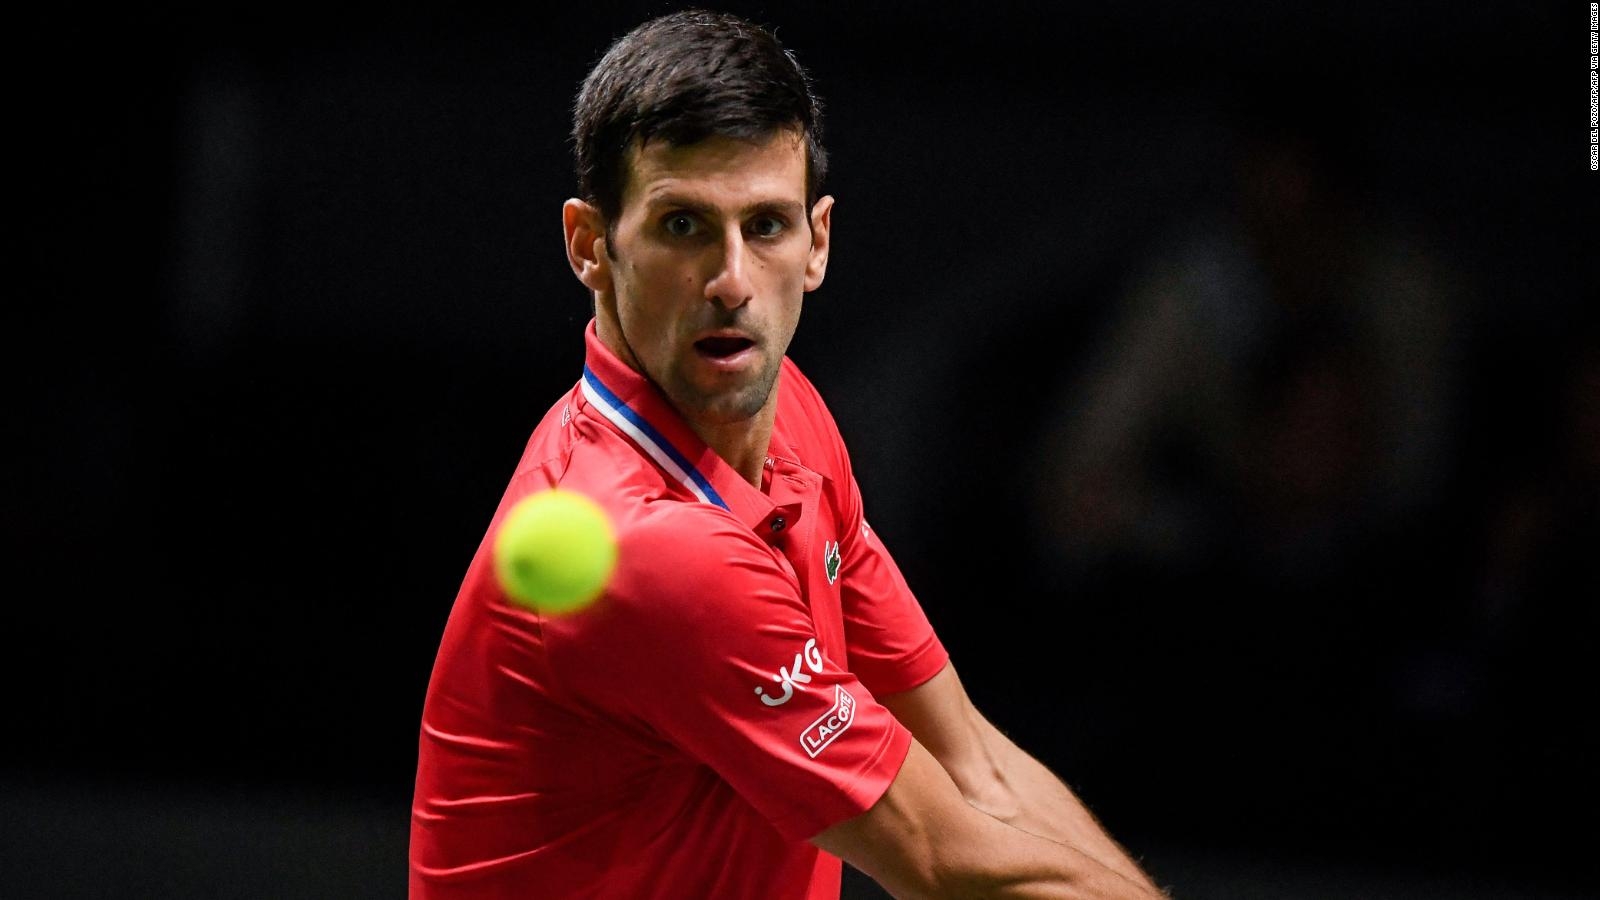 Juez ordena liberación de Novak Djokovic y podría disputar Abierto de Australia